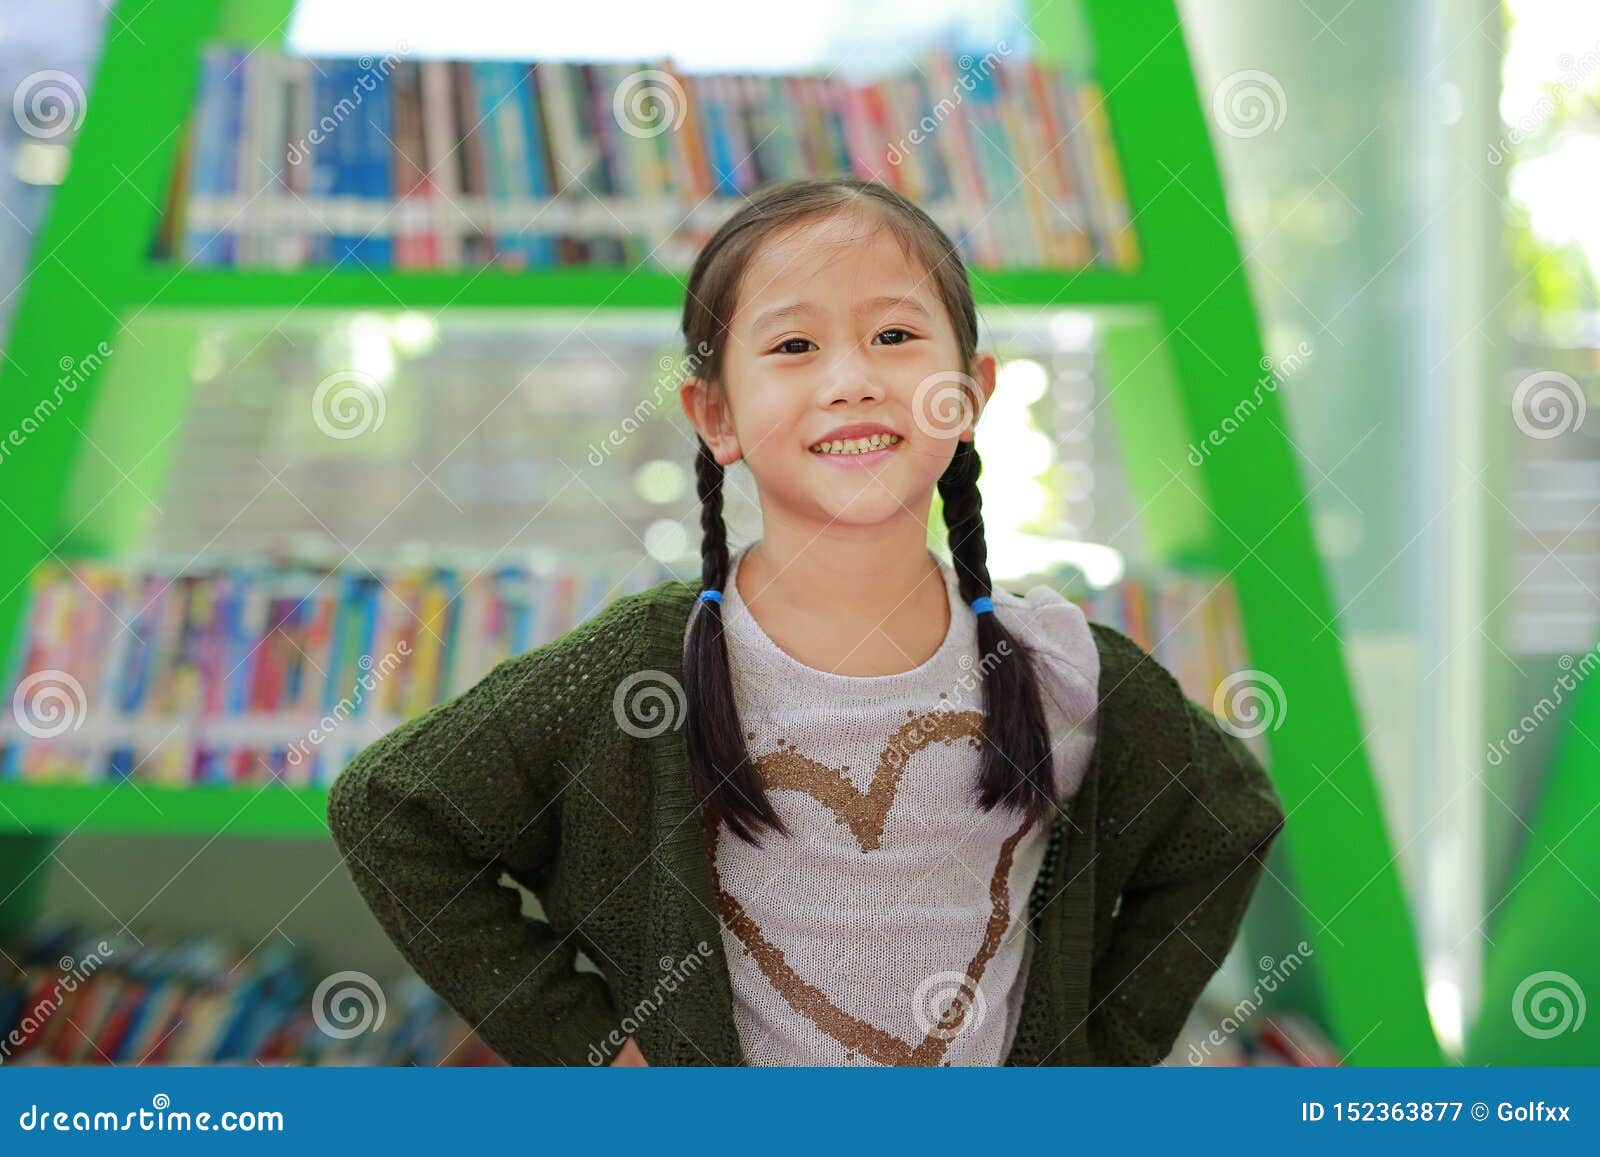 Smiling Little Asian Child Girl Against Bookshelf At Library